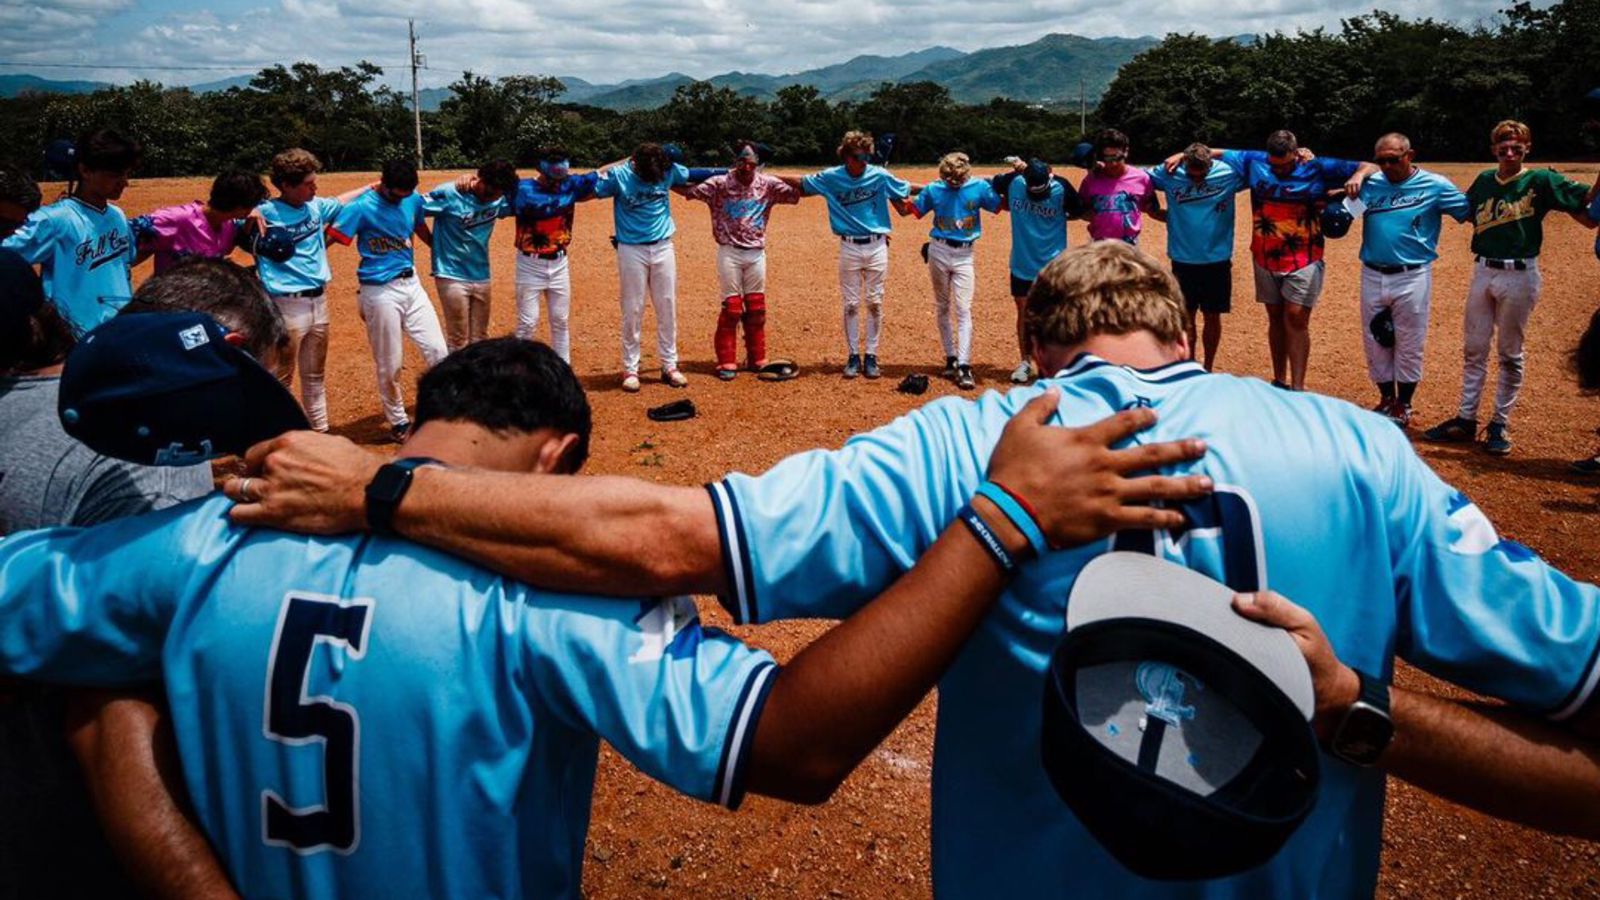 Time missionário prega Jesus através do beisebol: ‘Somos movidos por Ele’